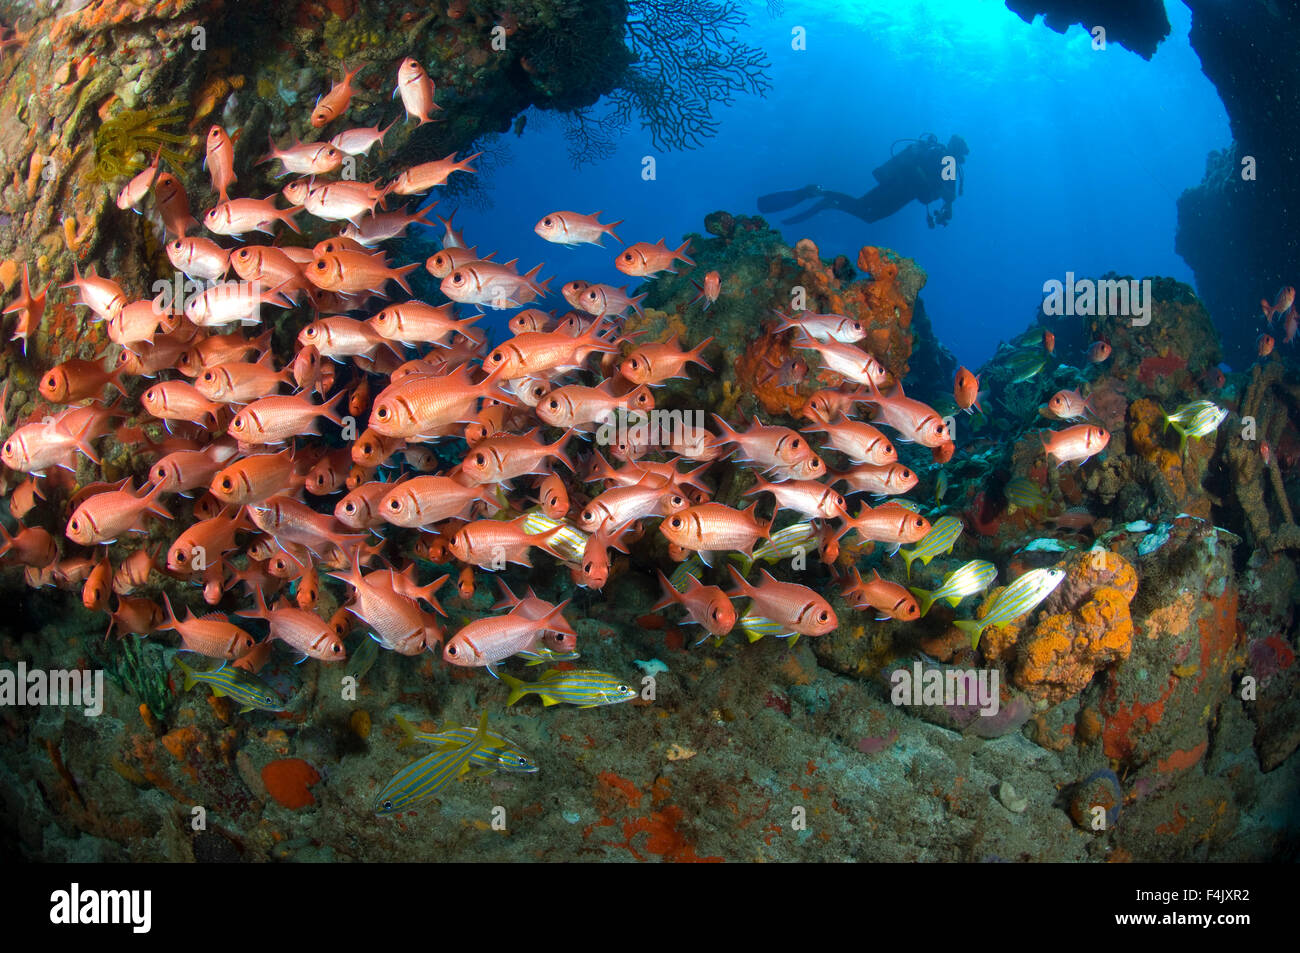 Reef scene Stock Photo